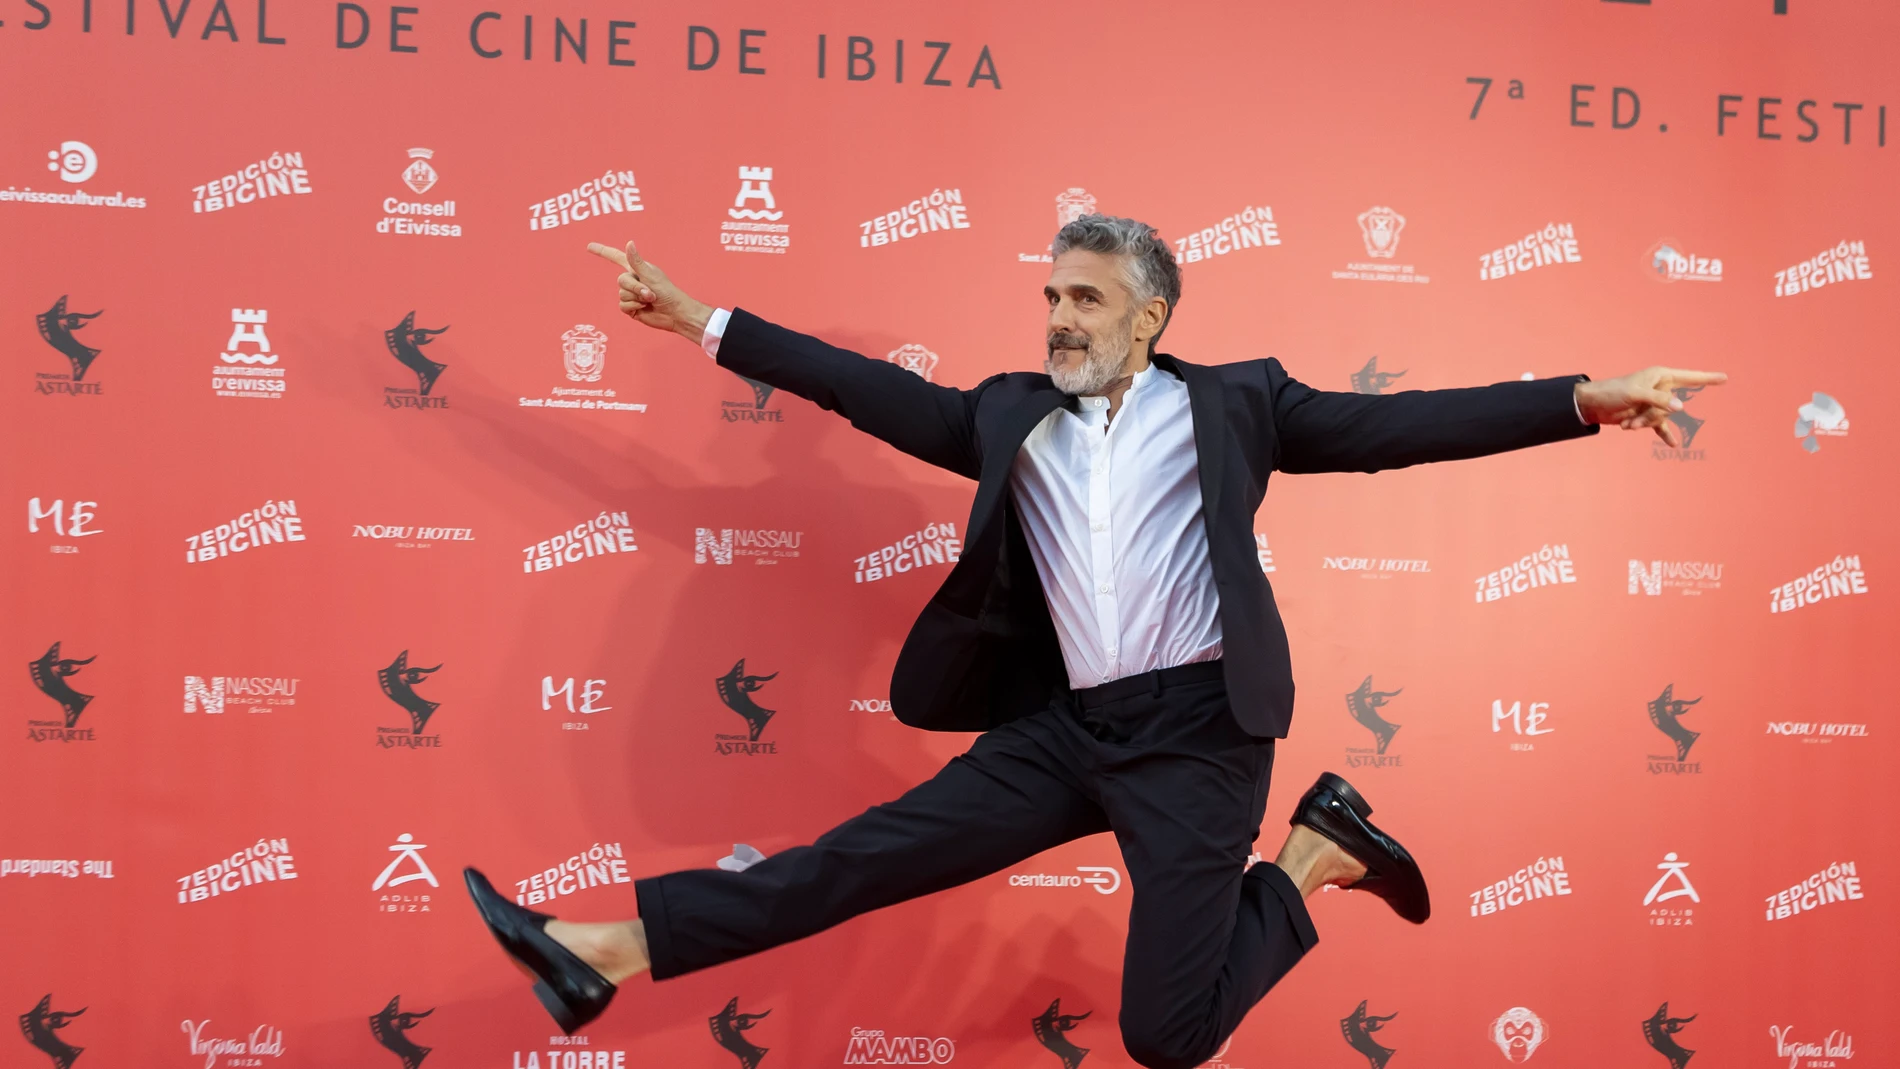 Leonardo Sbaraglia en la alfombra roja de los Premios Astarté del Ibicine